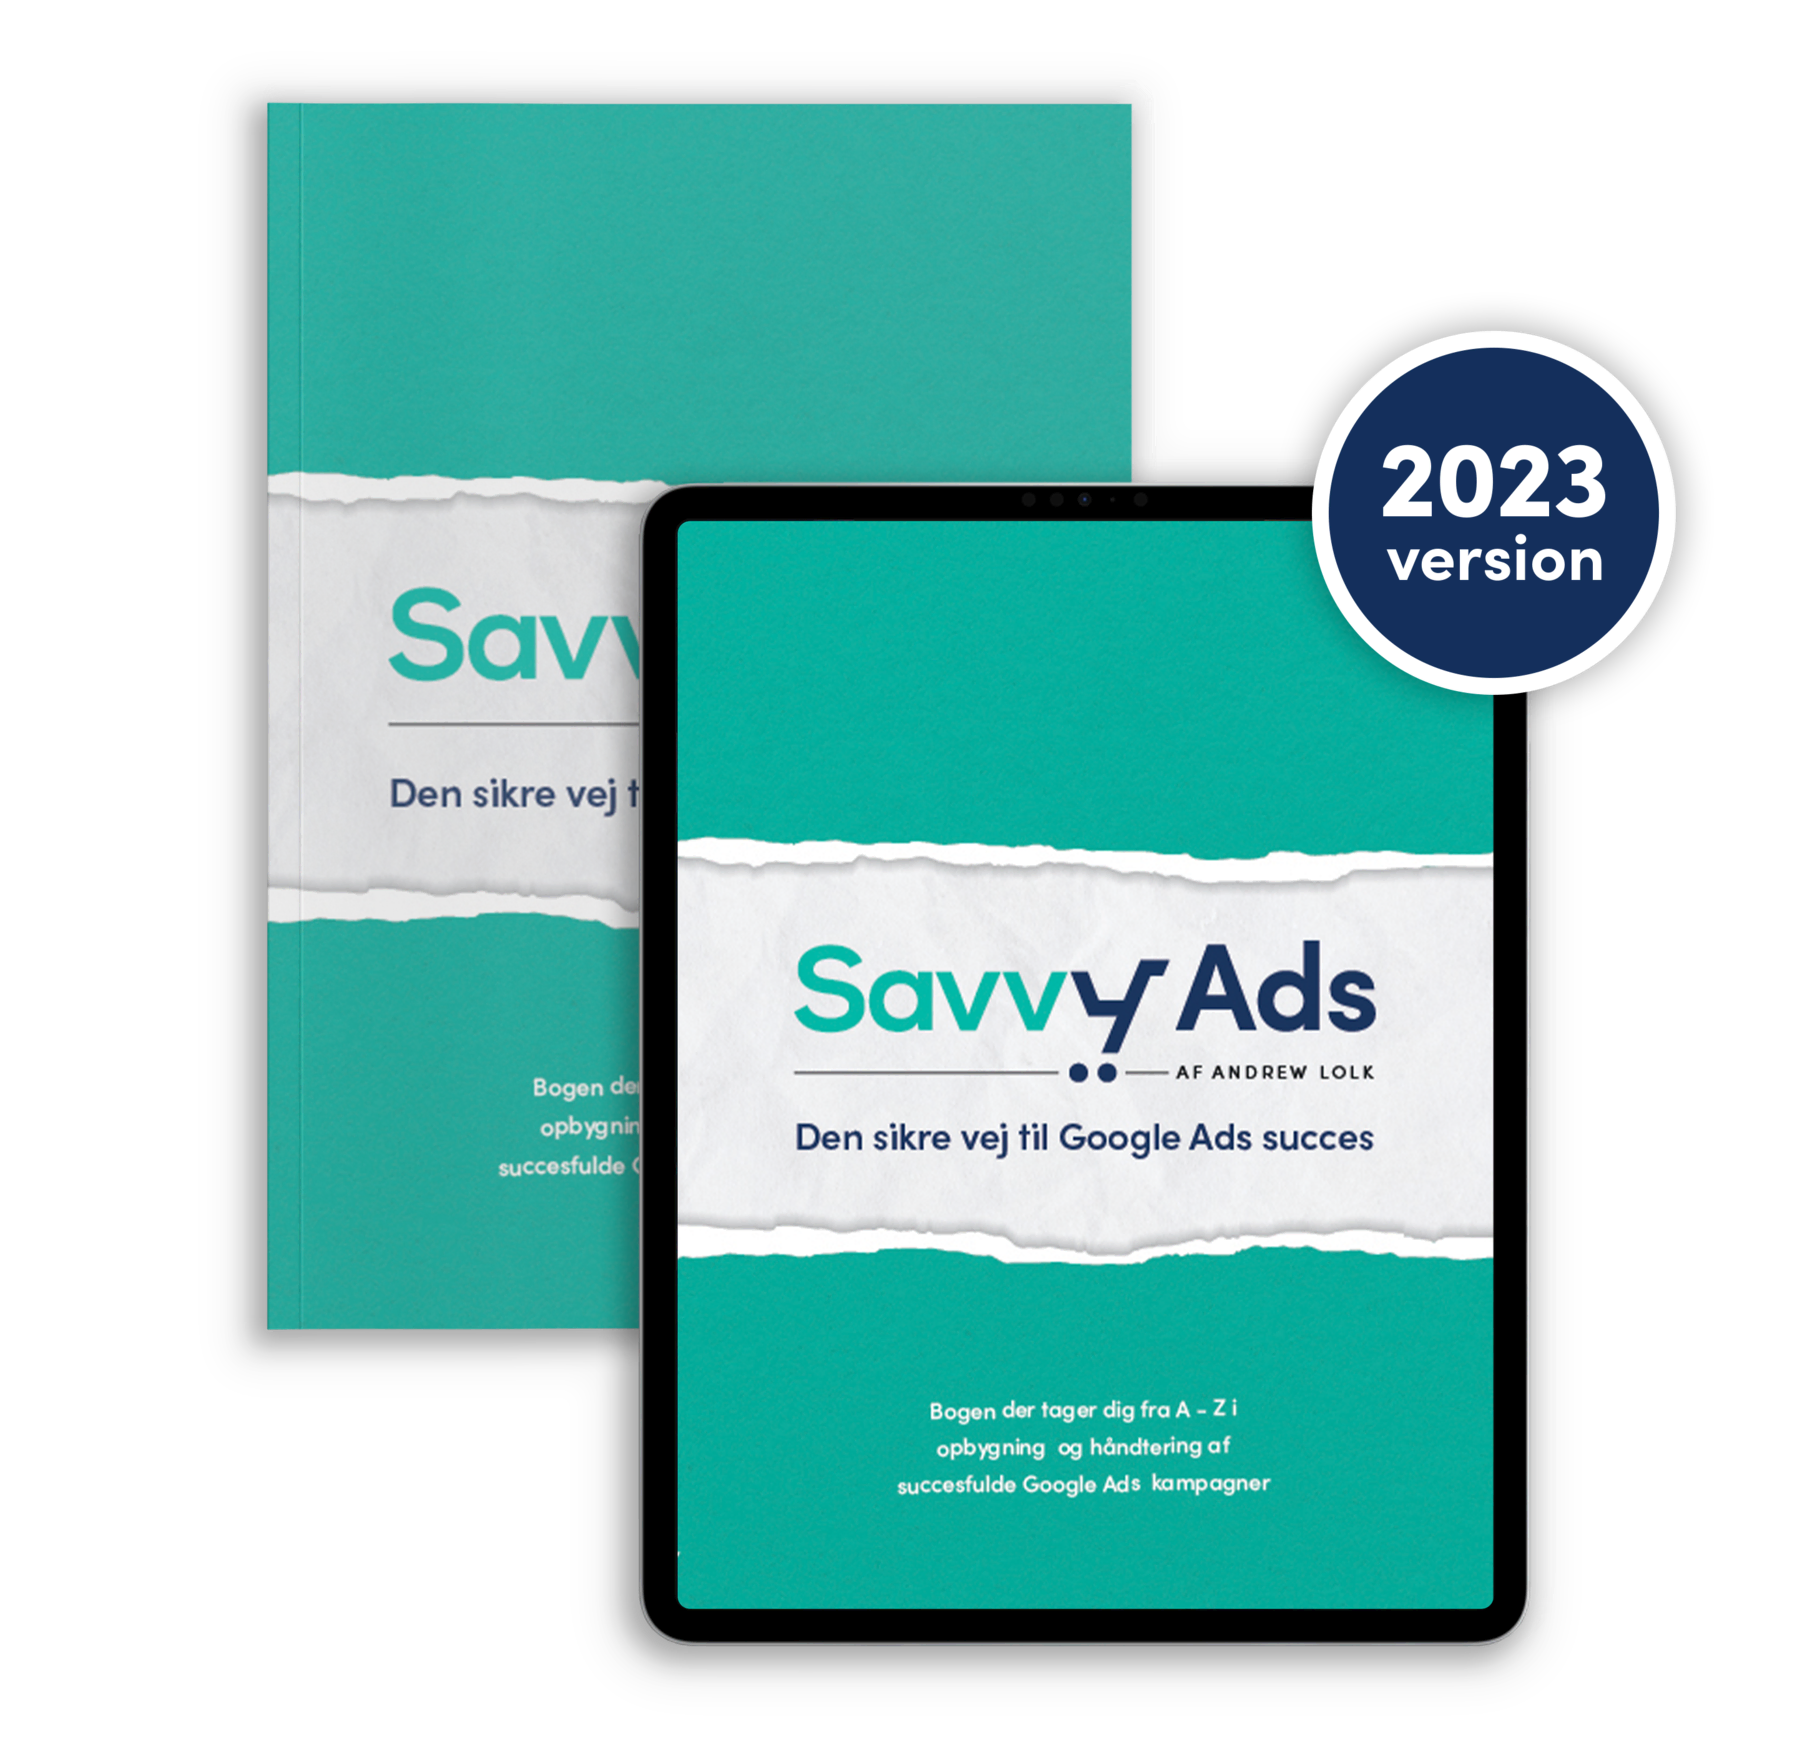 Savvy Ads - den sikre vej til Google Ads success i 2023